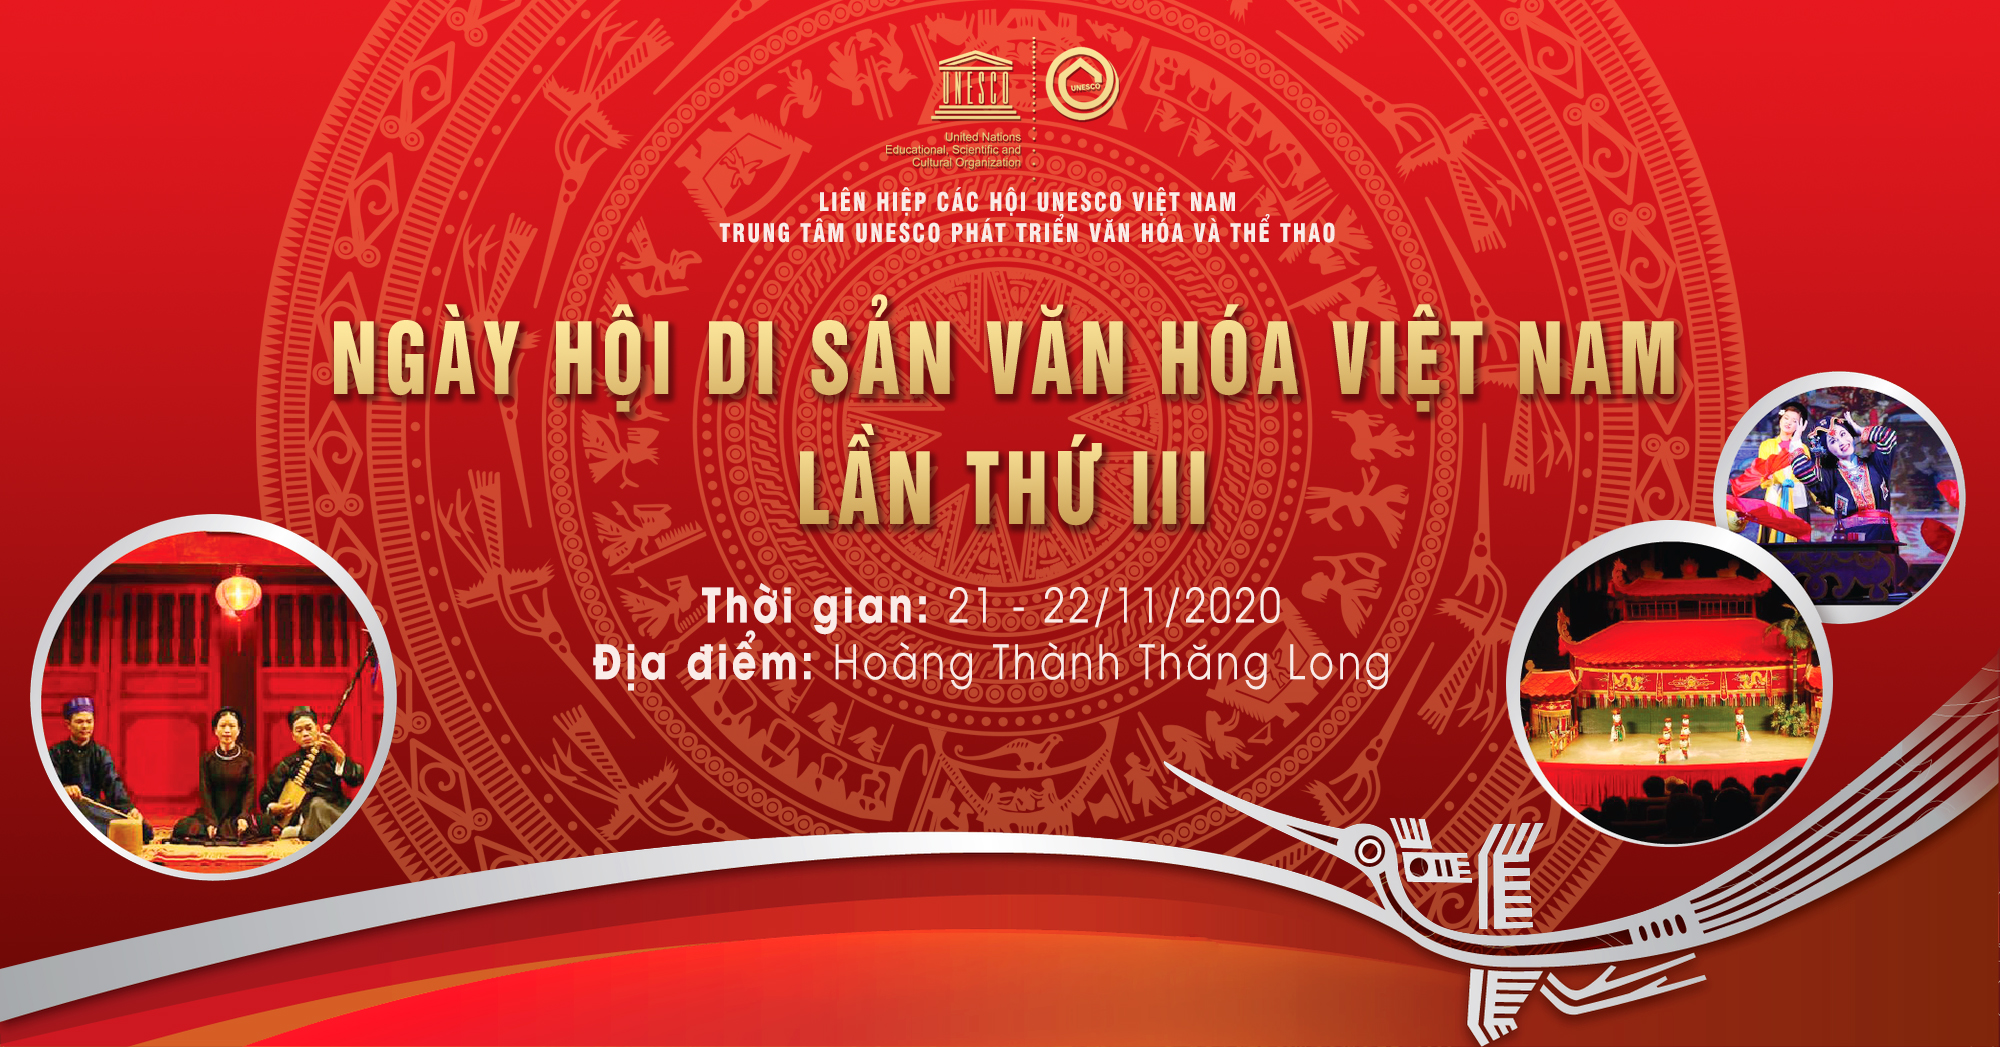 Truyền hình Nguồn Việt: Thông cáo báo chí ngày hội di sản văn hóa Việt Nam lần 3